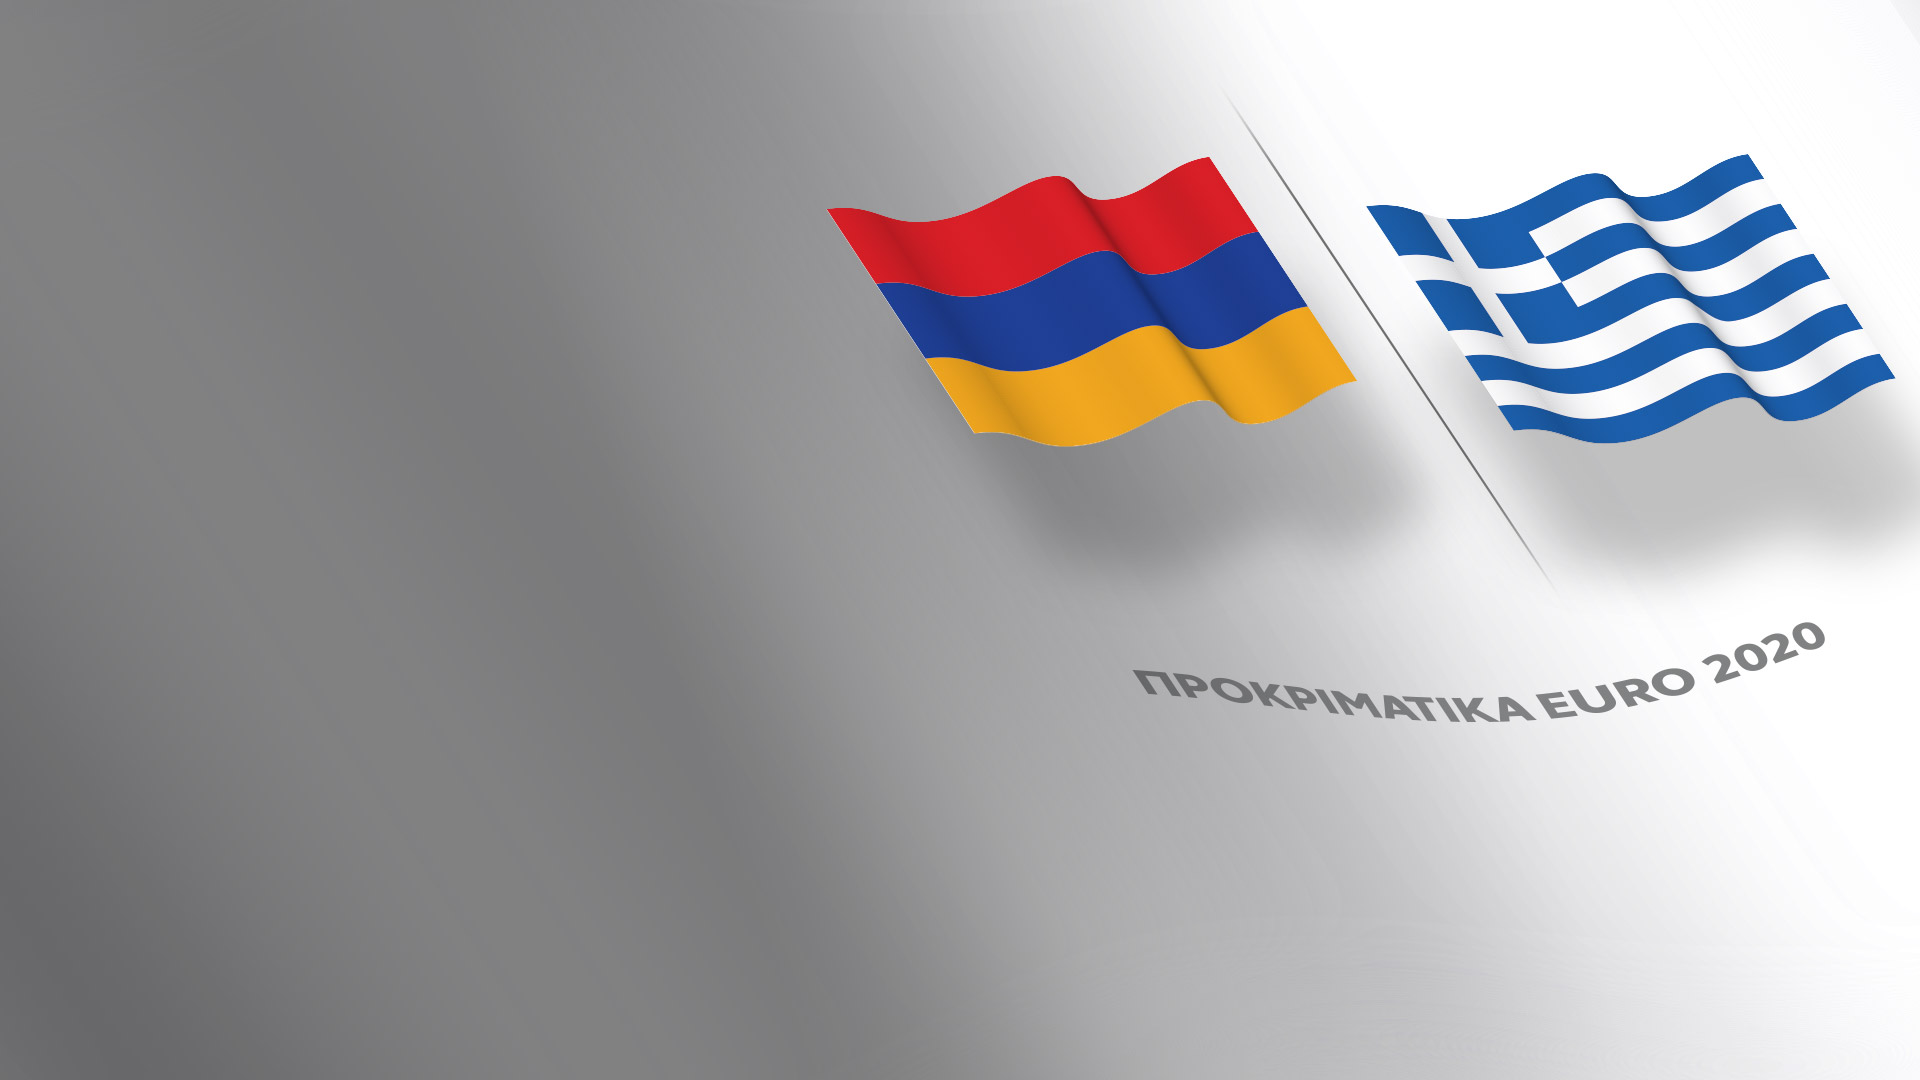 Προκριματικά euro 2020 - Αρμενία - Ελλάδα